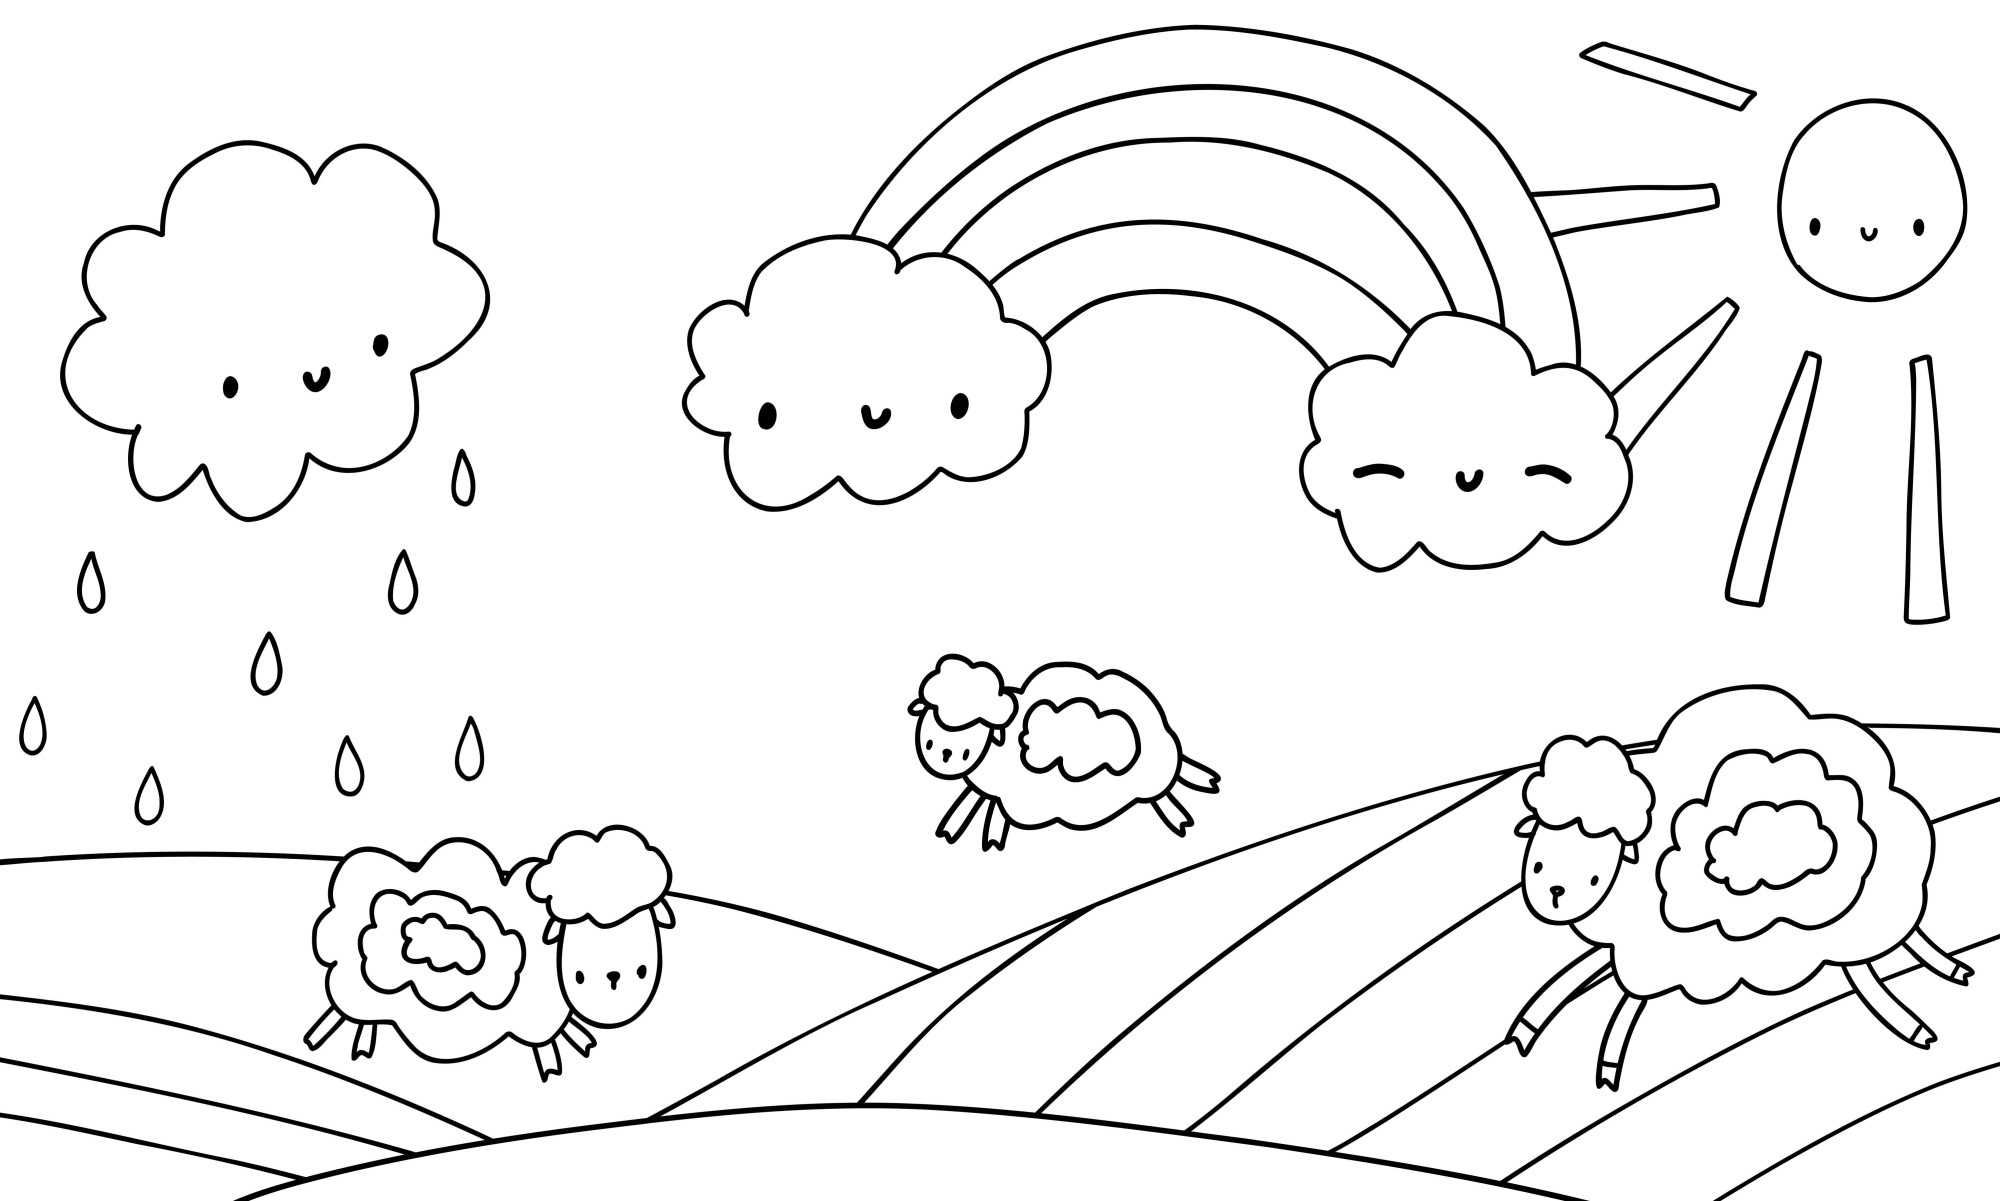 Раскраска для детей: радуга над лугом с овцами